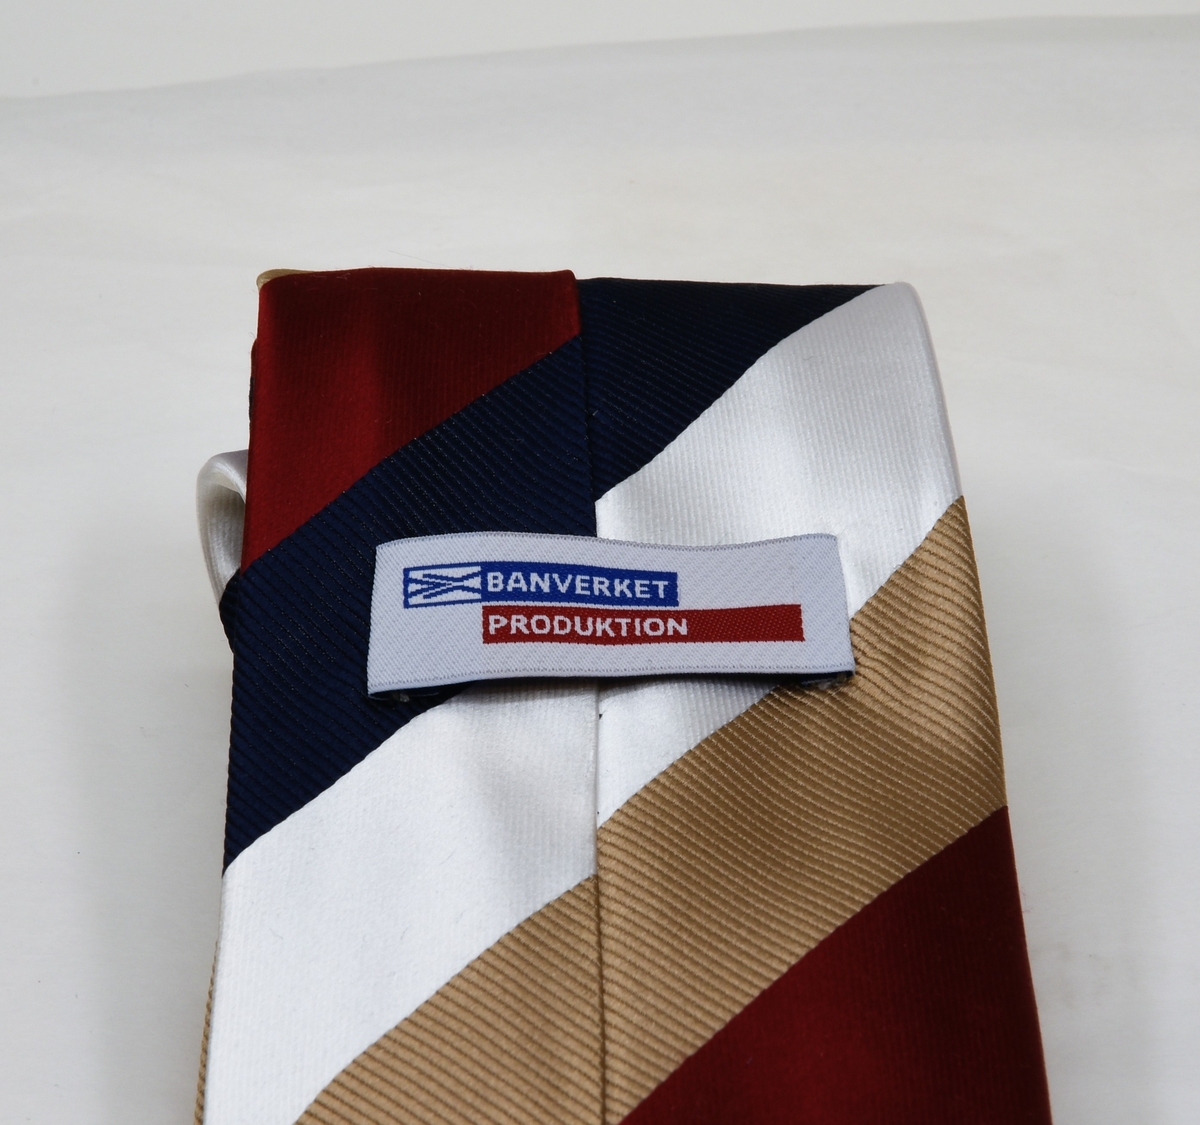 Slips av silke med diagonalrandigt mönster i färgerna vit, blå, röd och ljusbrunt. På baksidan av slipsen sitter det två lappar.